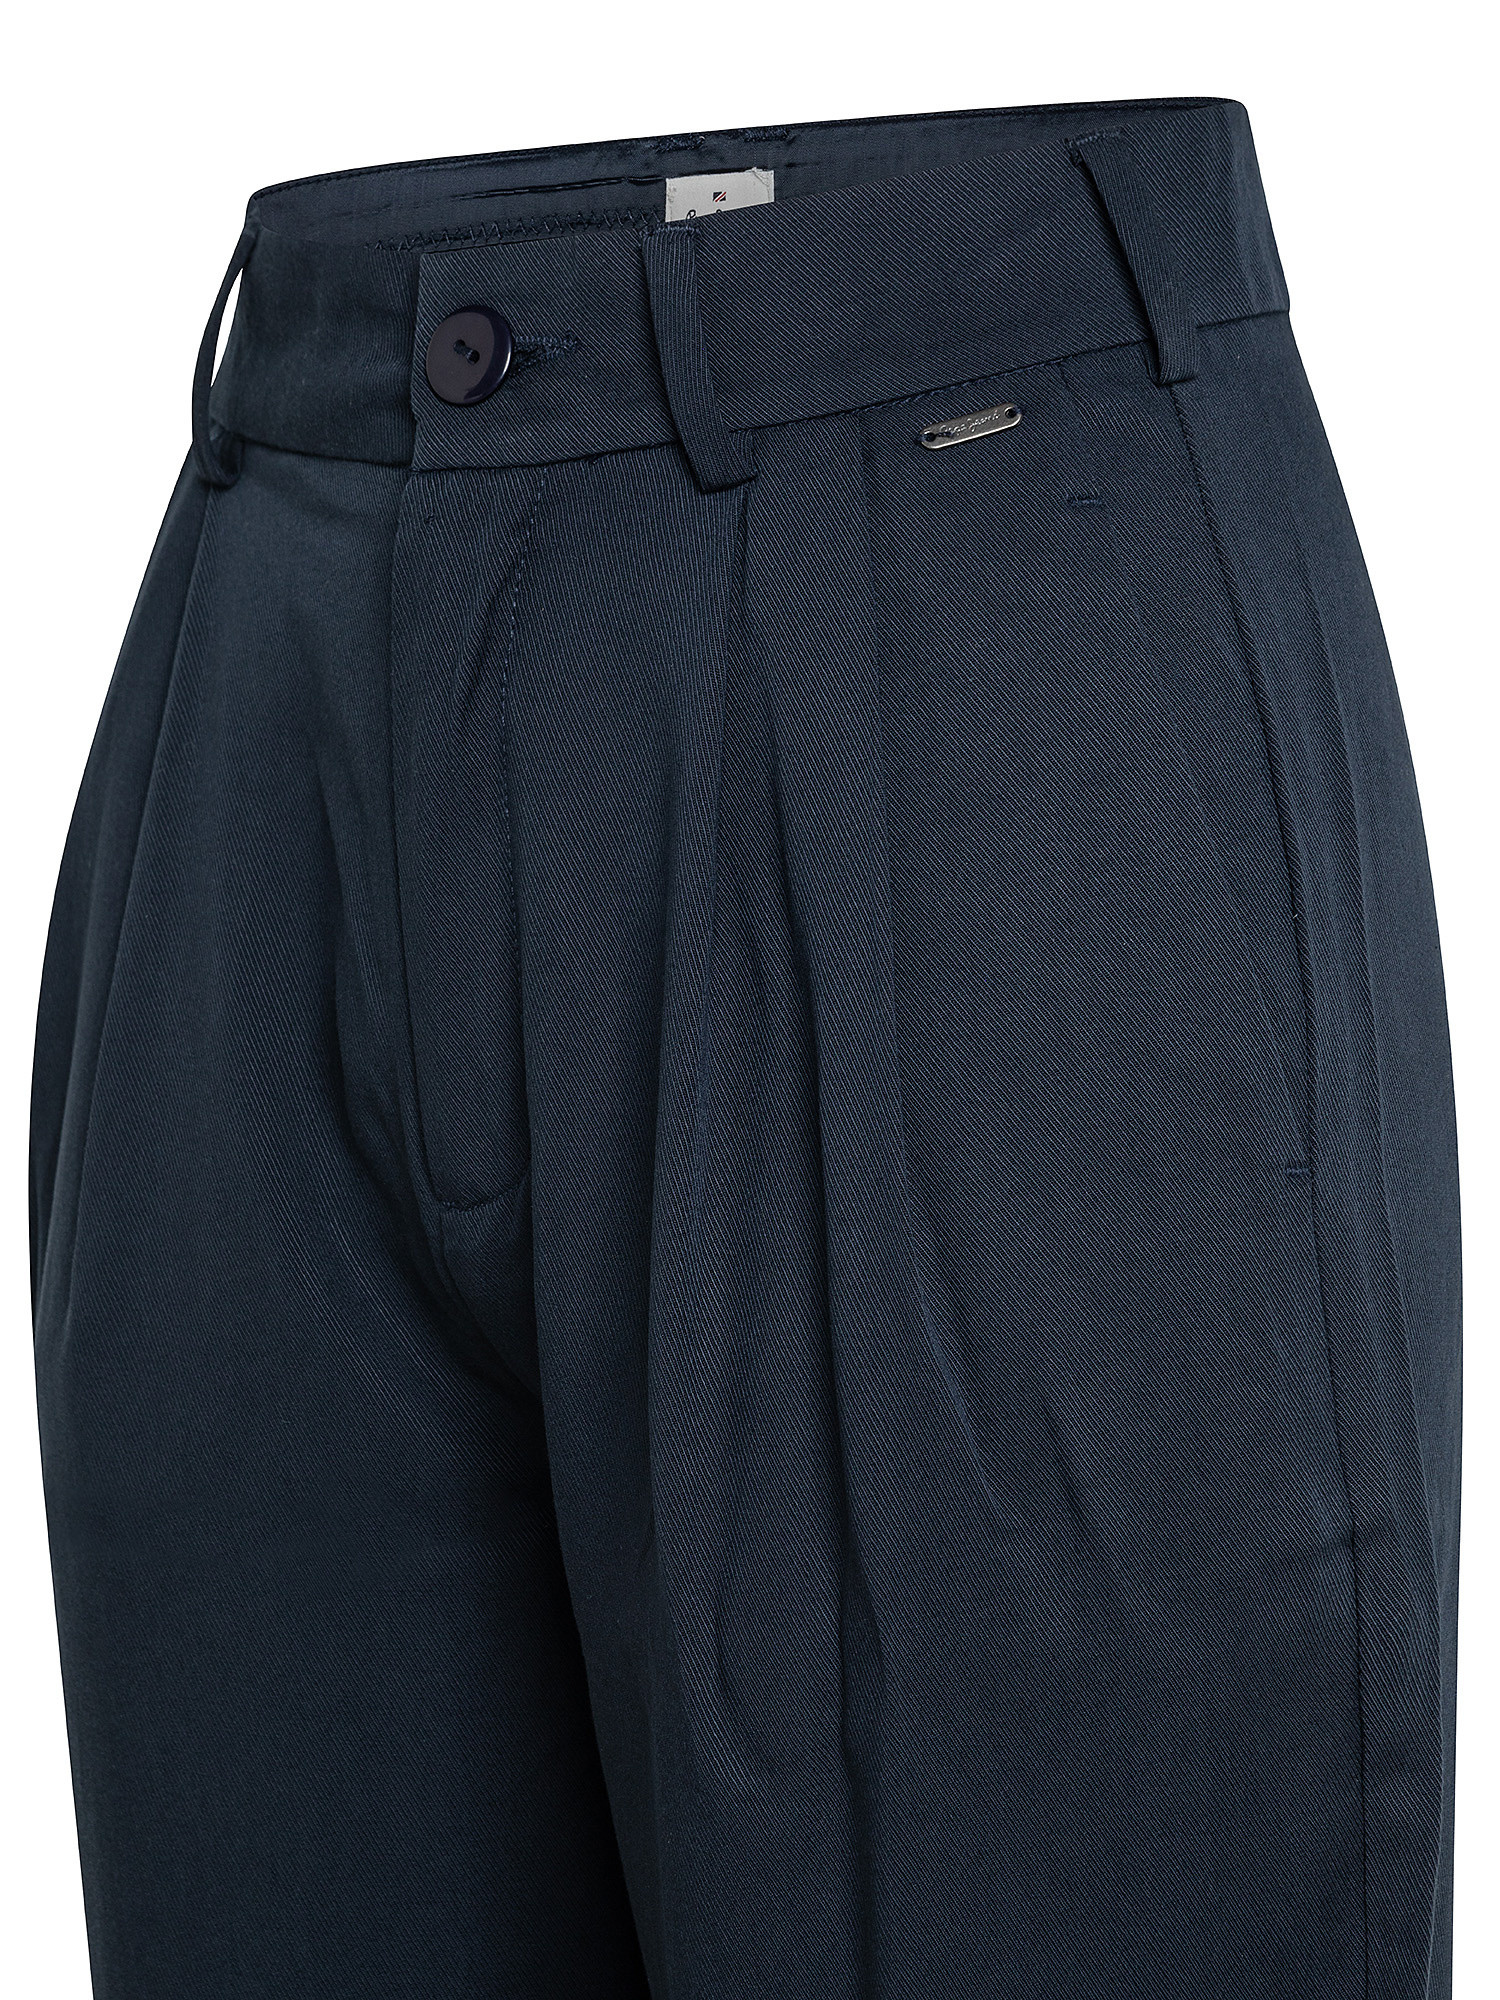 Pantaloni chino Fatima, Blu scuro, large image number 2